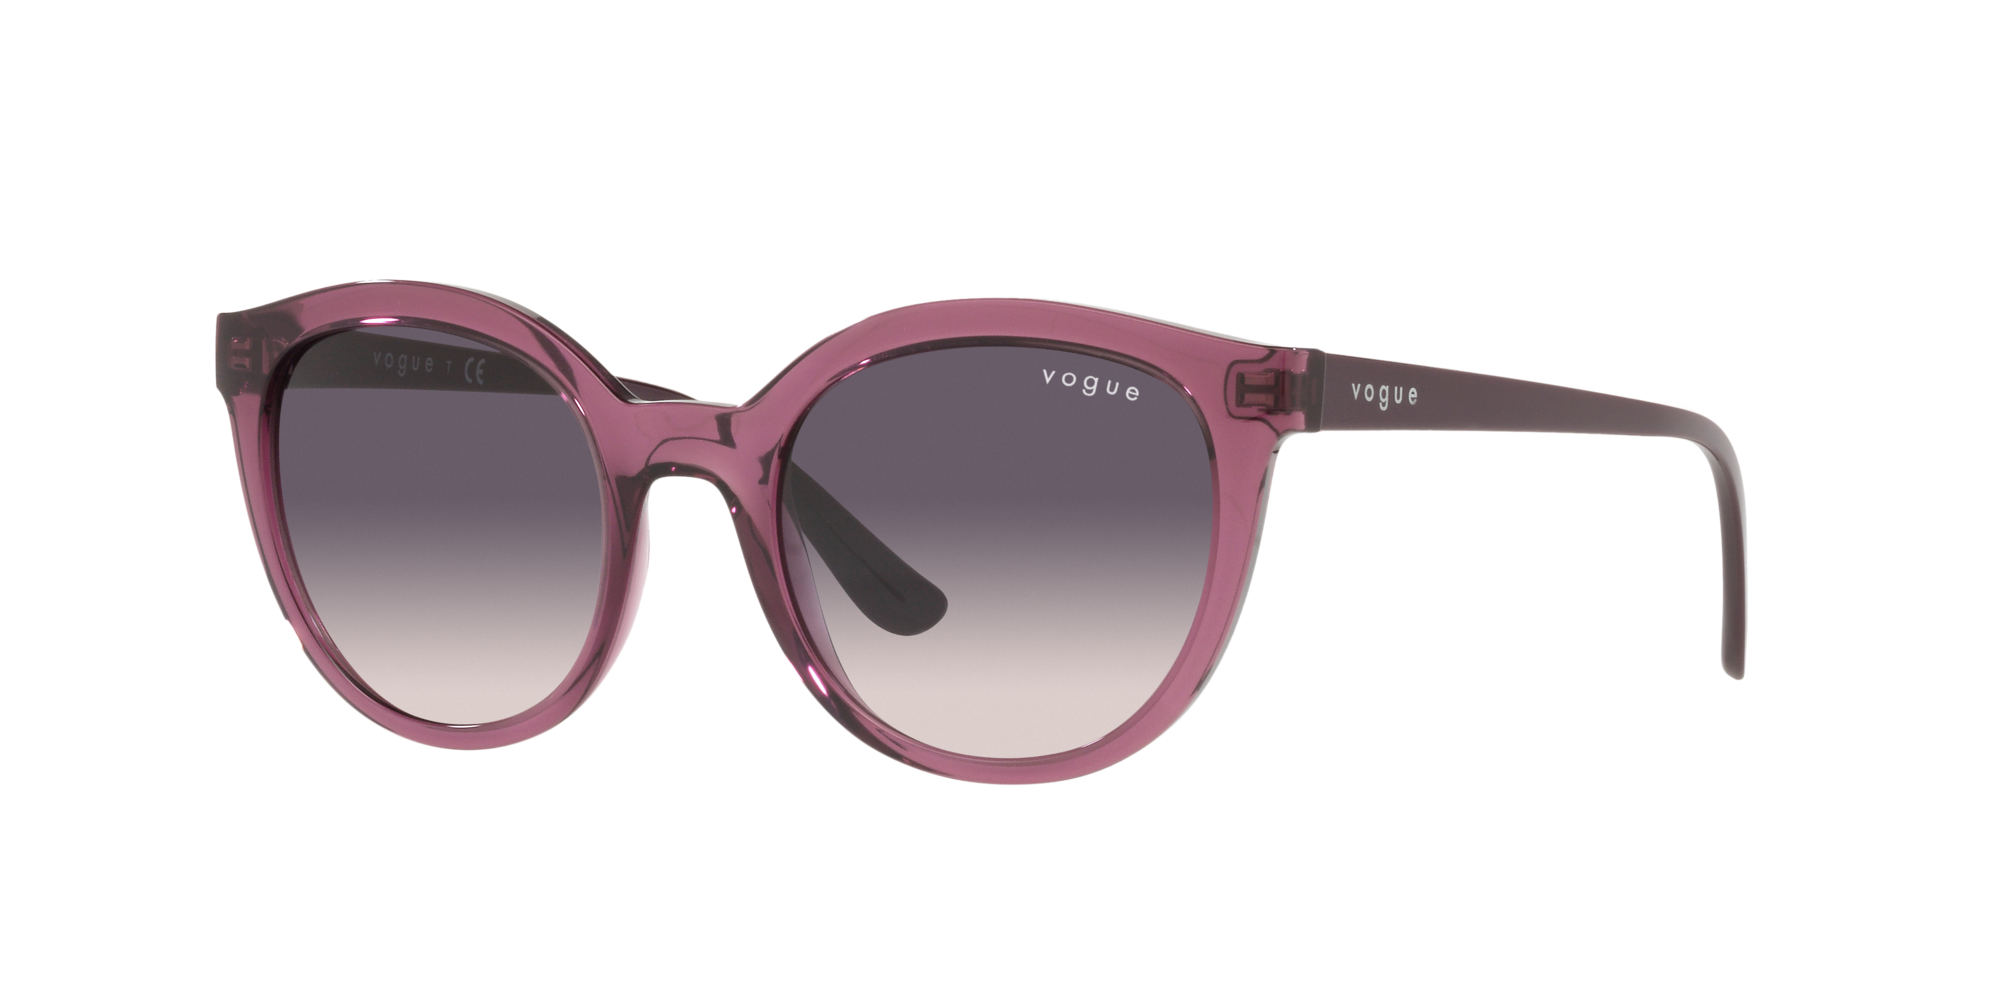 Vogue Sonnenbrille in Rosa/Schwarz VO5427S 276136 50